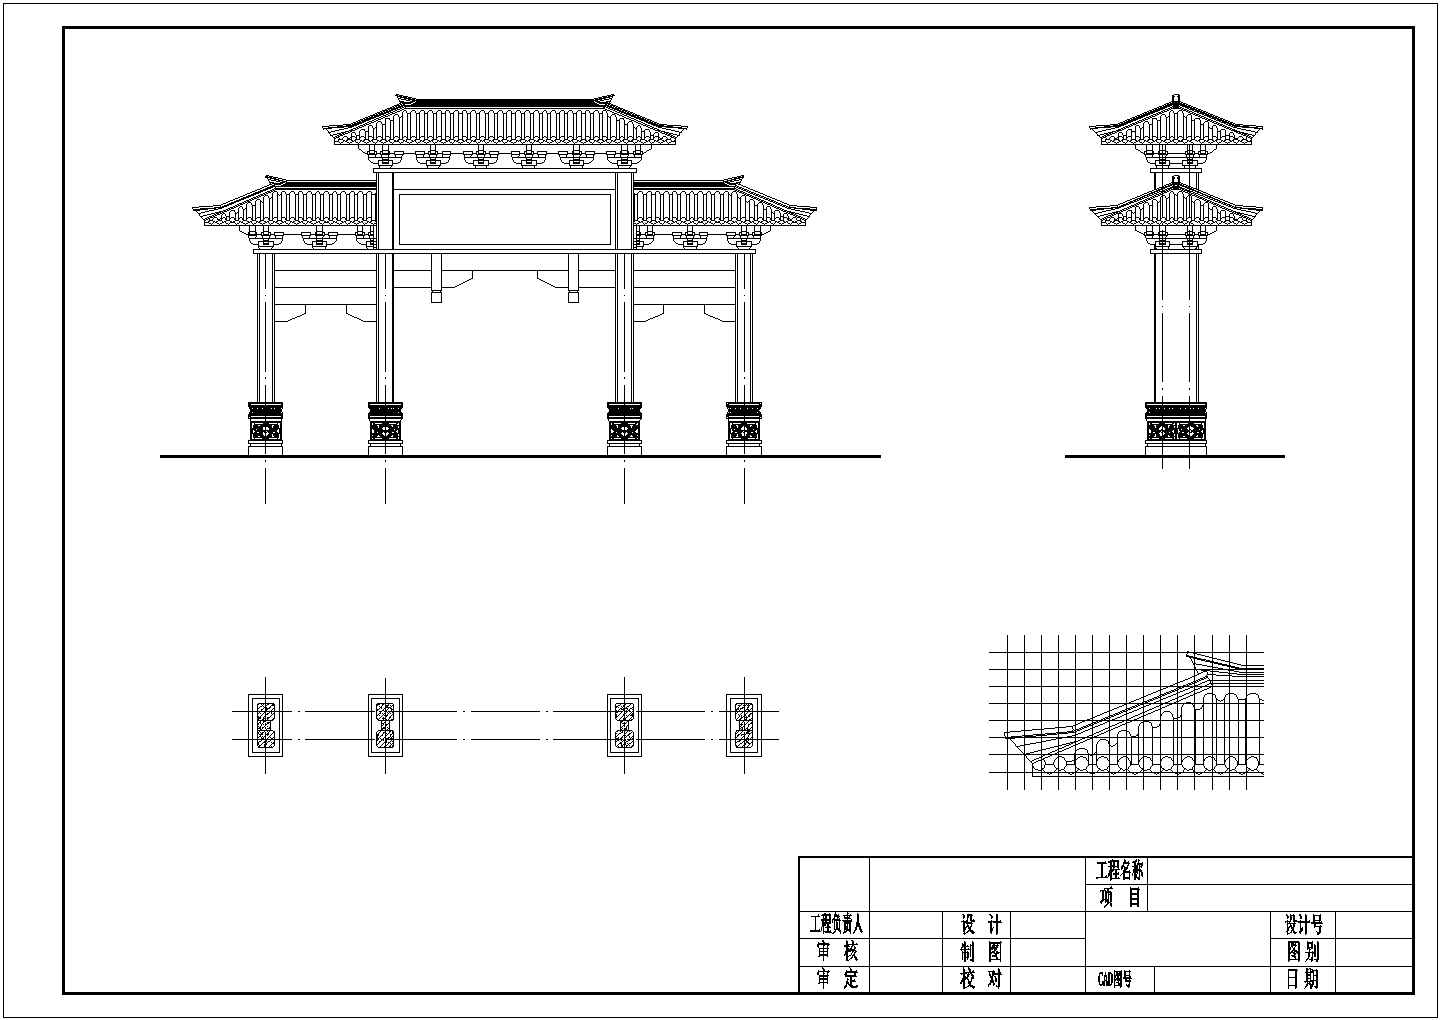 仿汉代四柱三开牌坊建筑设计图纸